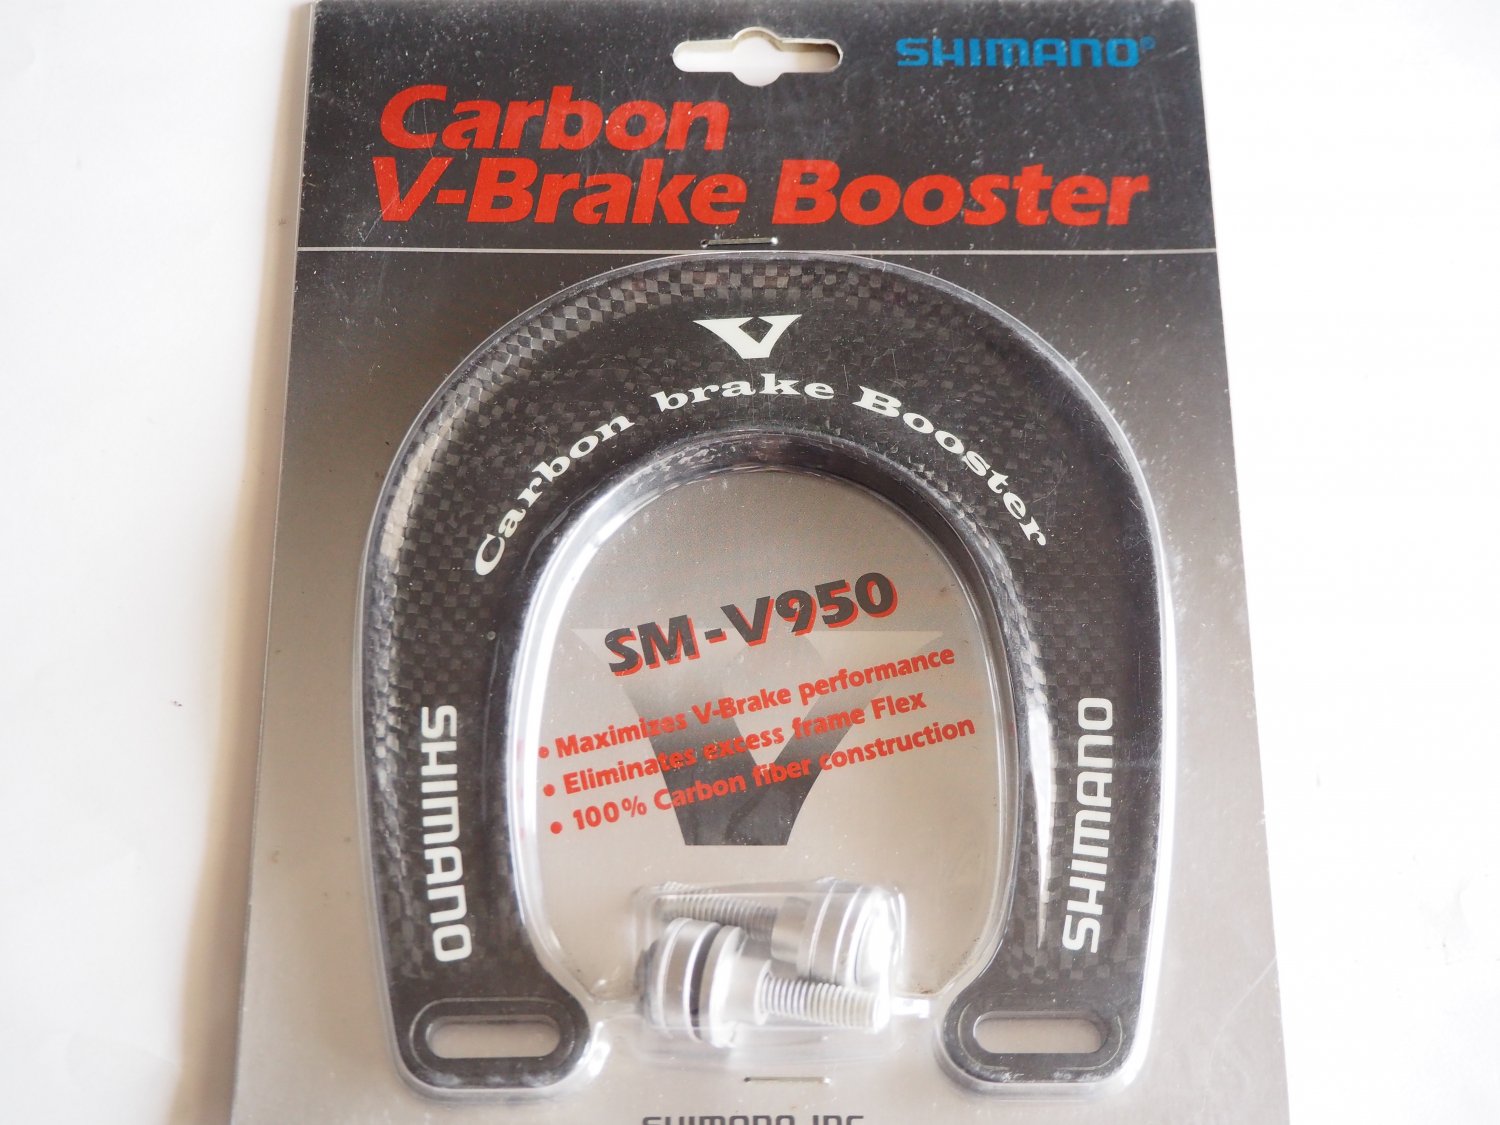 SHIMANO Carbon V-Brake Booster